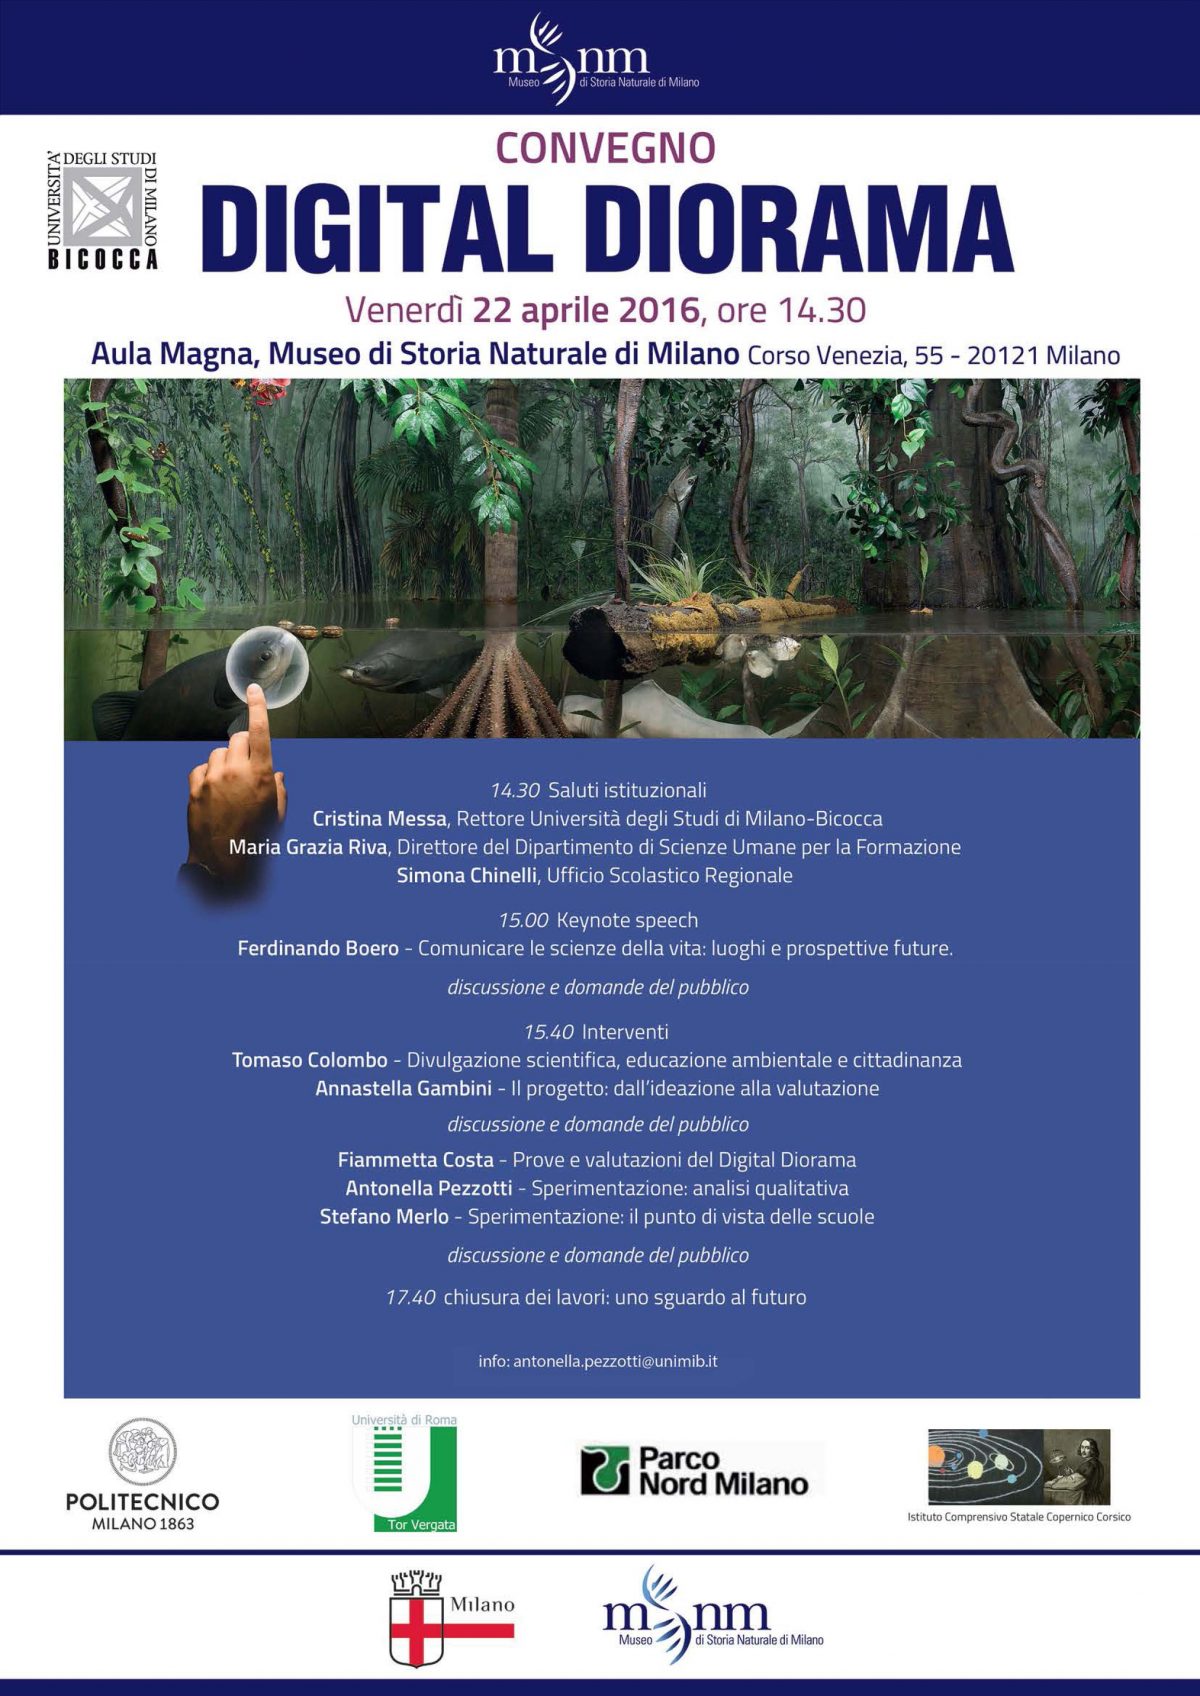 Digital Diorama: un viaggio interattivo negli ecosistemi